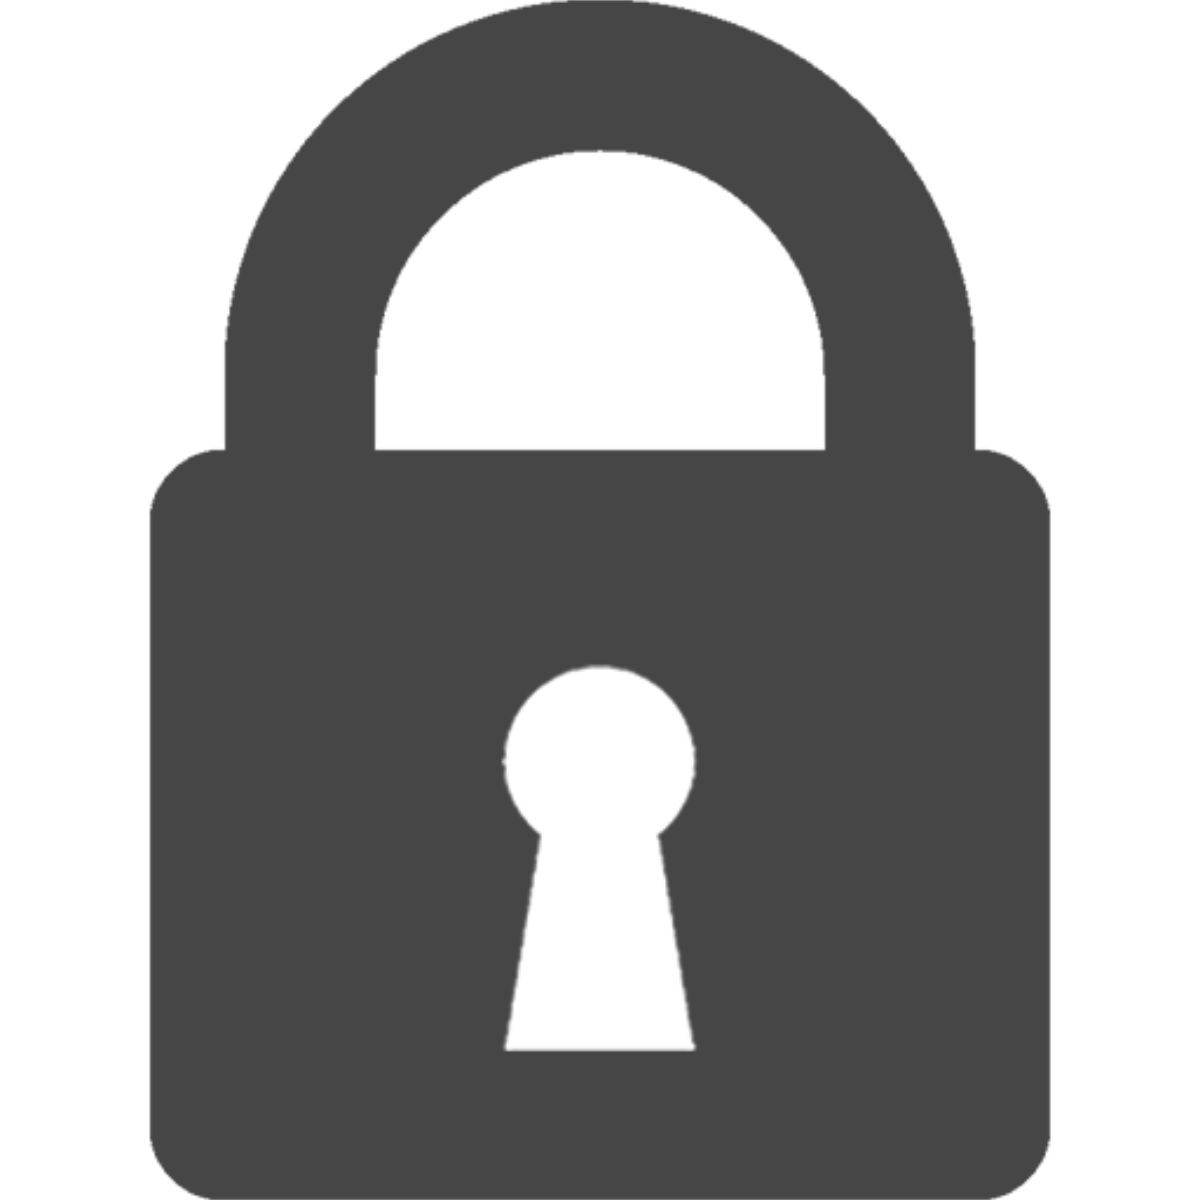 File lock or padlock icon.